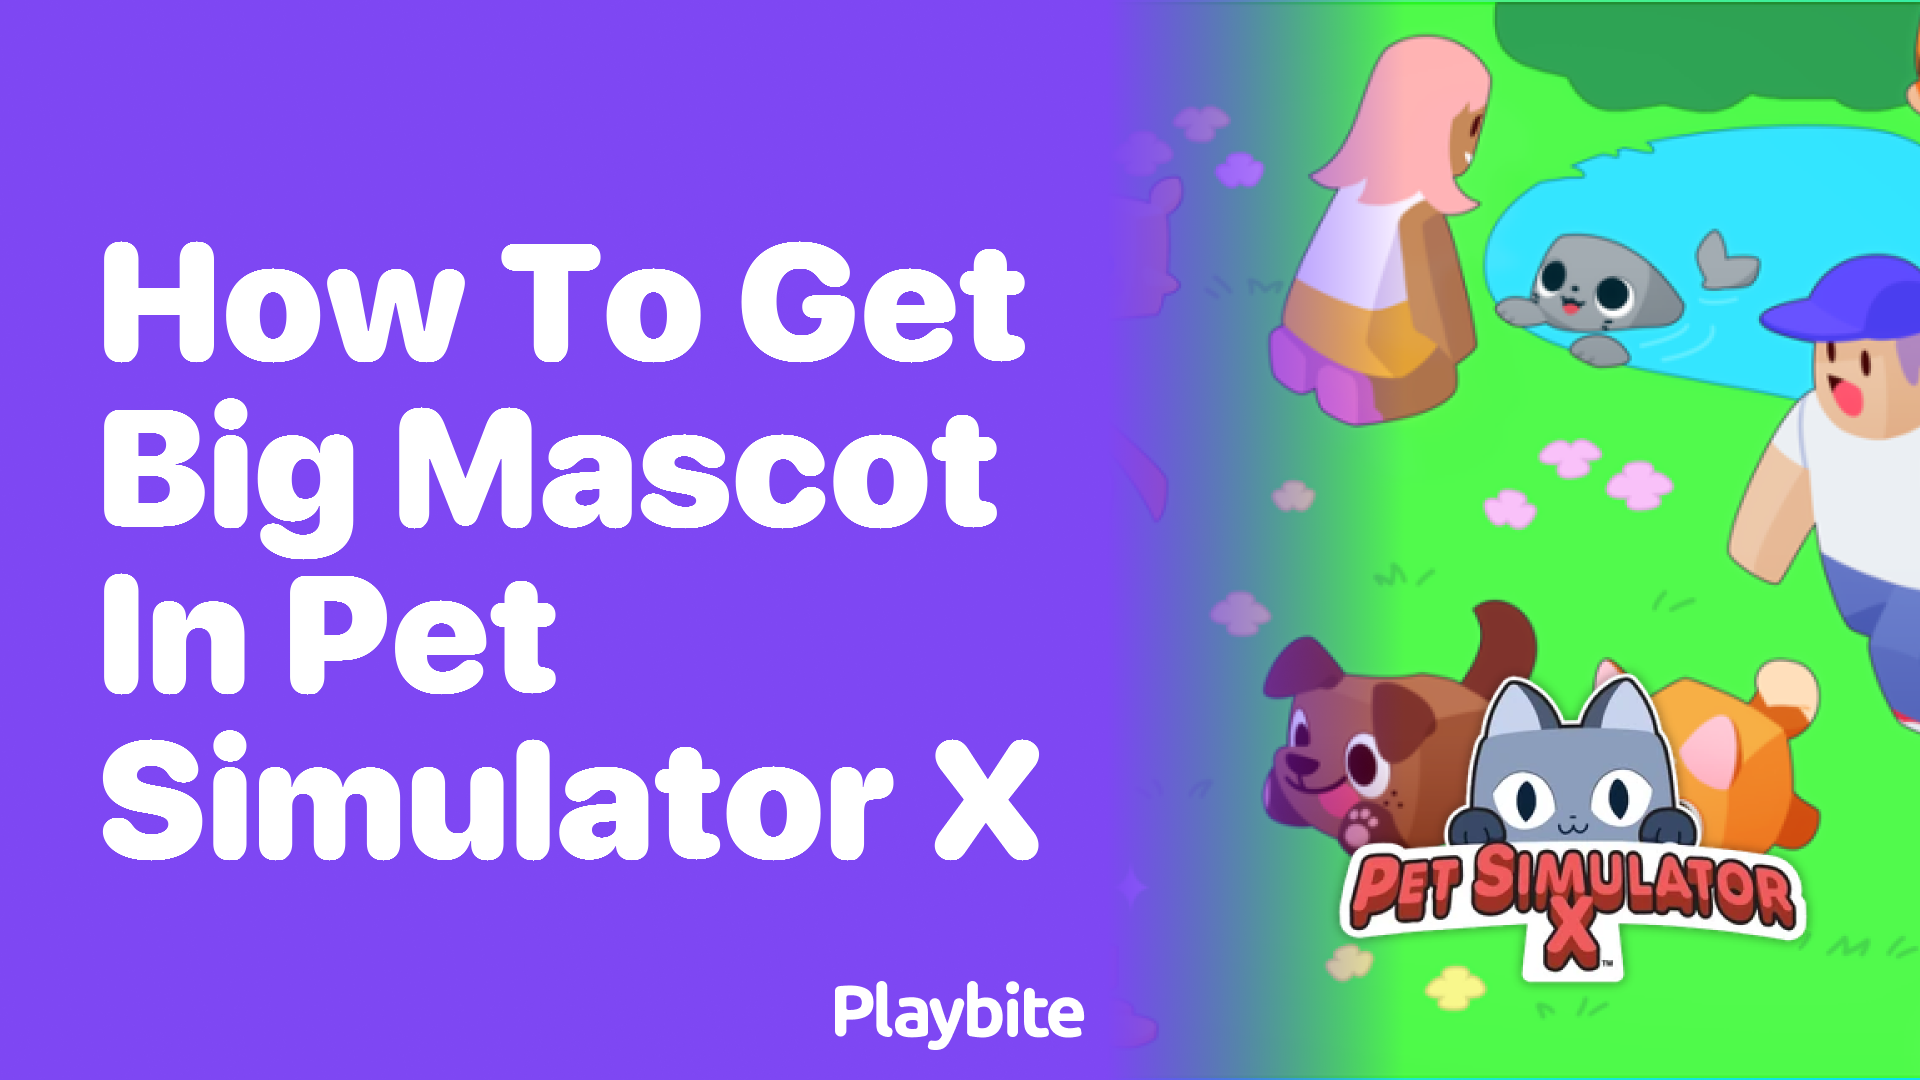 How to Get Big Mascot in Pet Simulator X